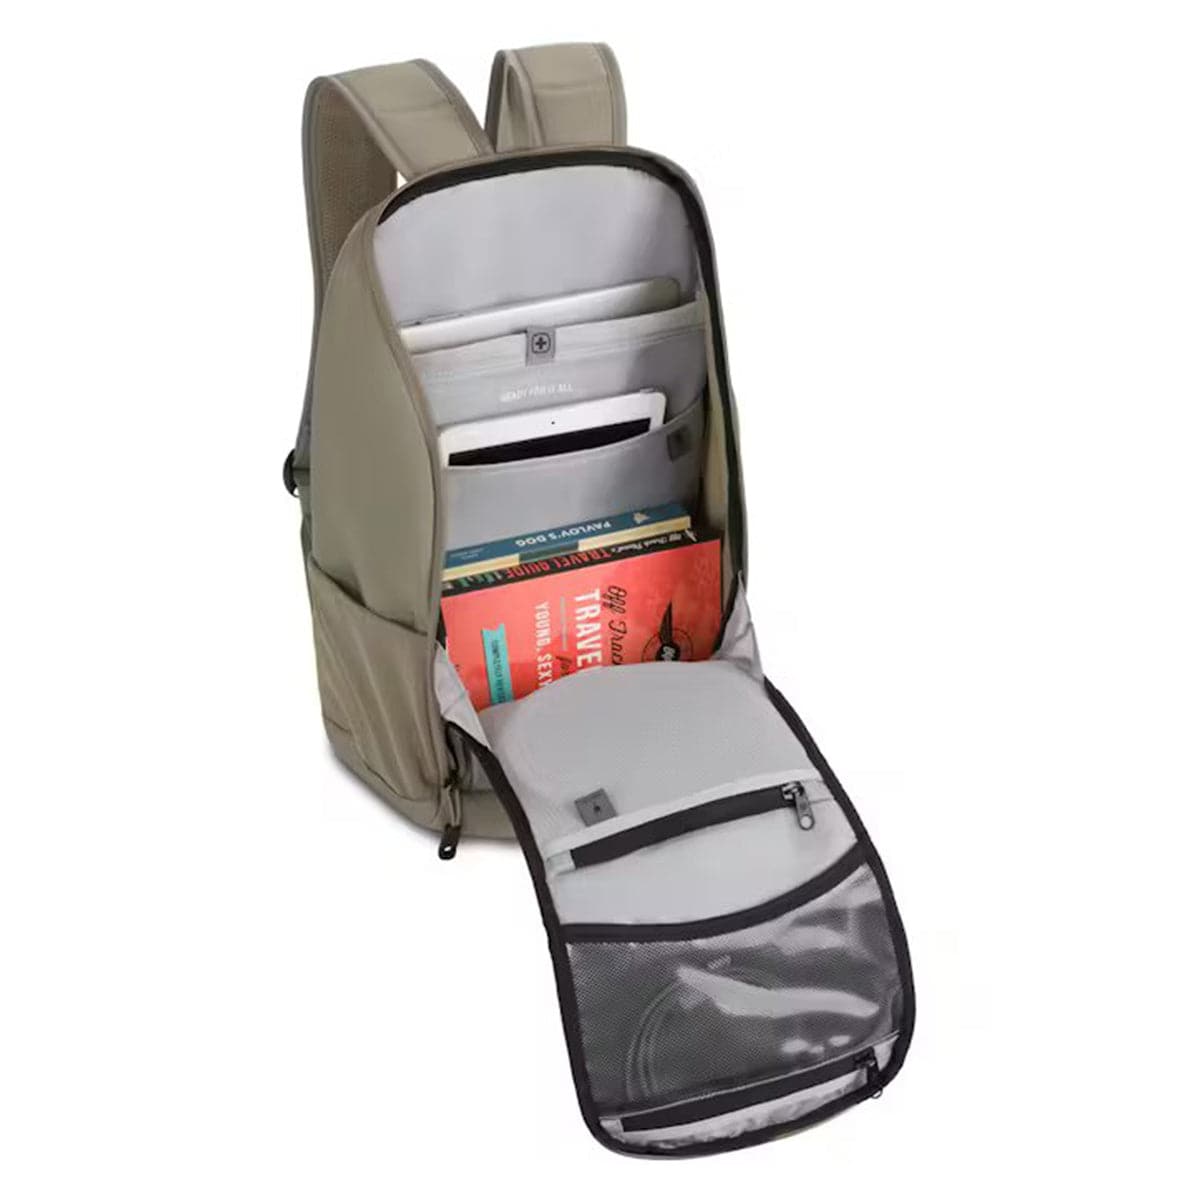 SwissGear 16" Laptop Backpack